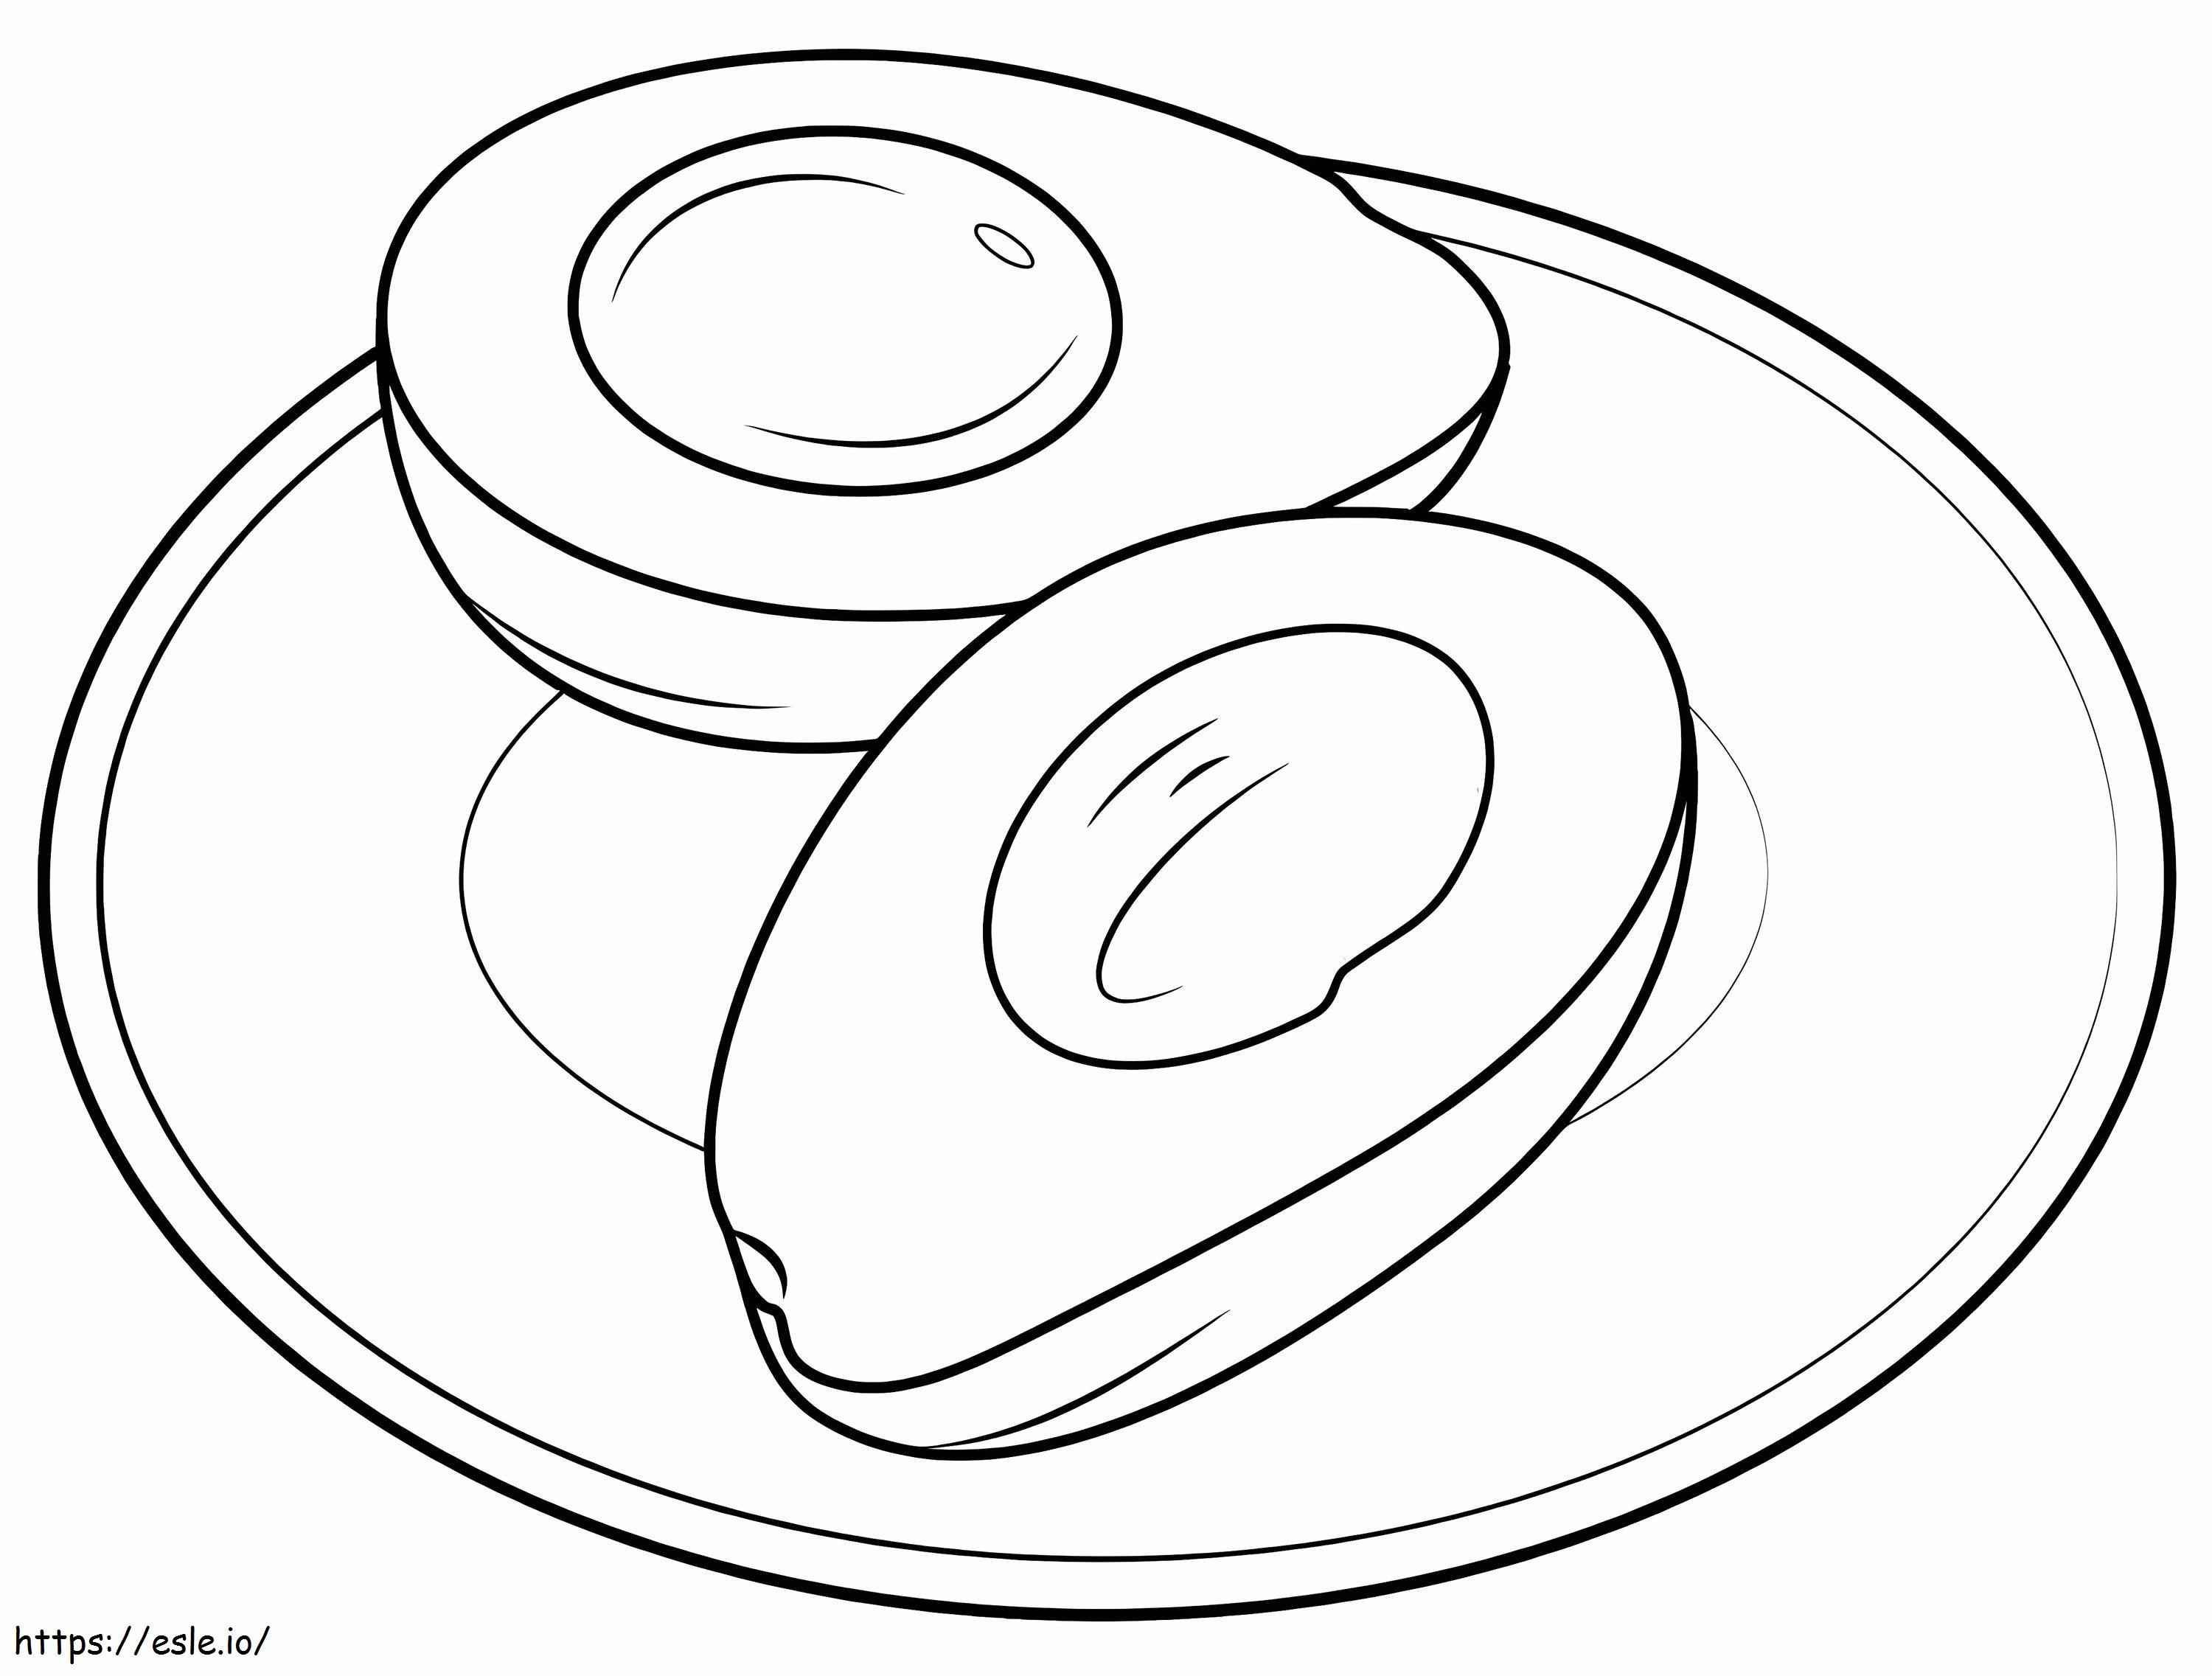 Avocado auf einem Teller ausmalbilder